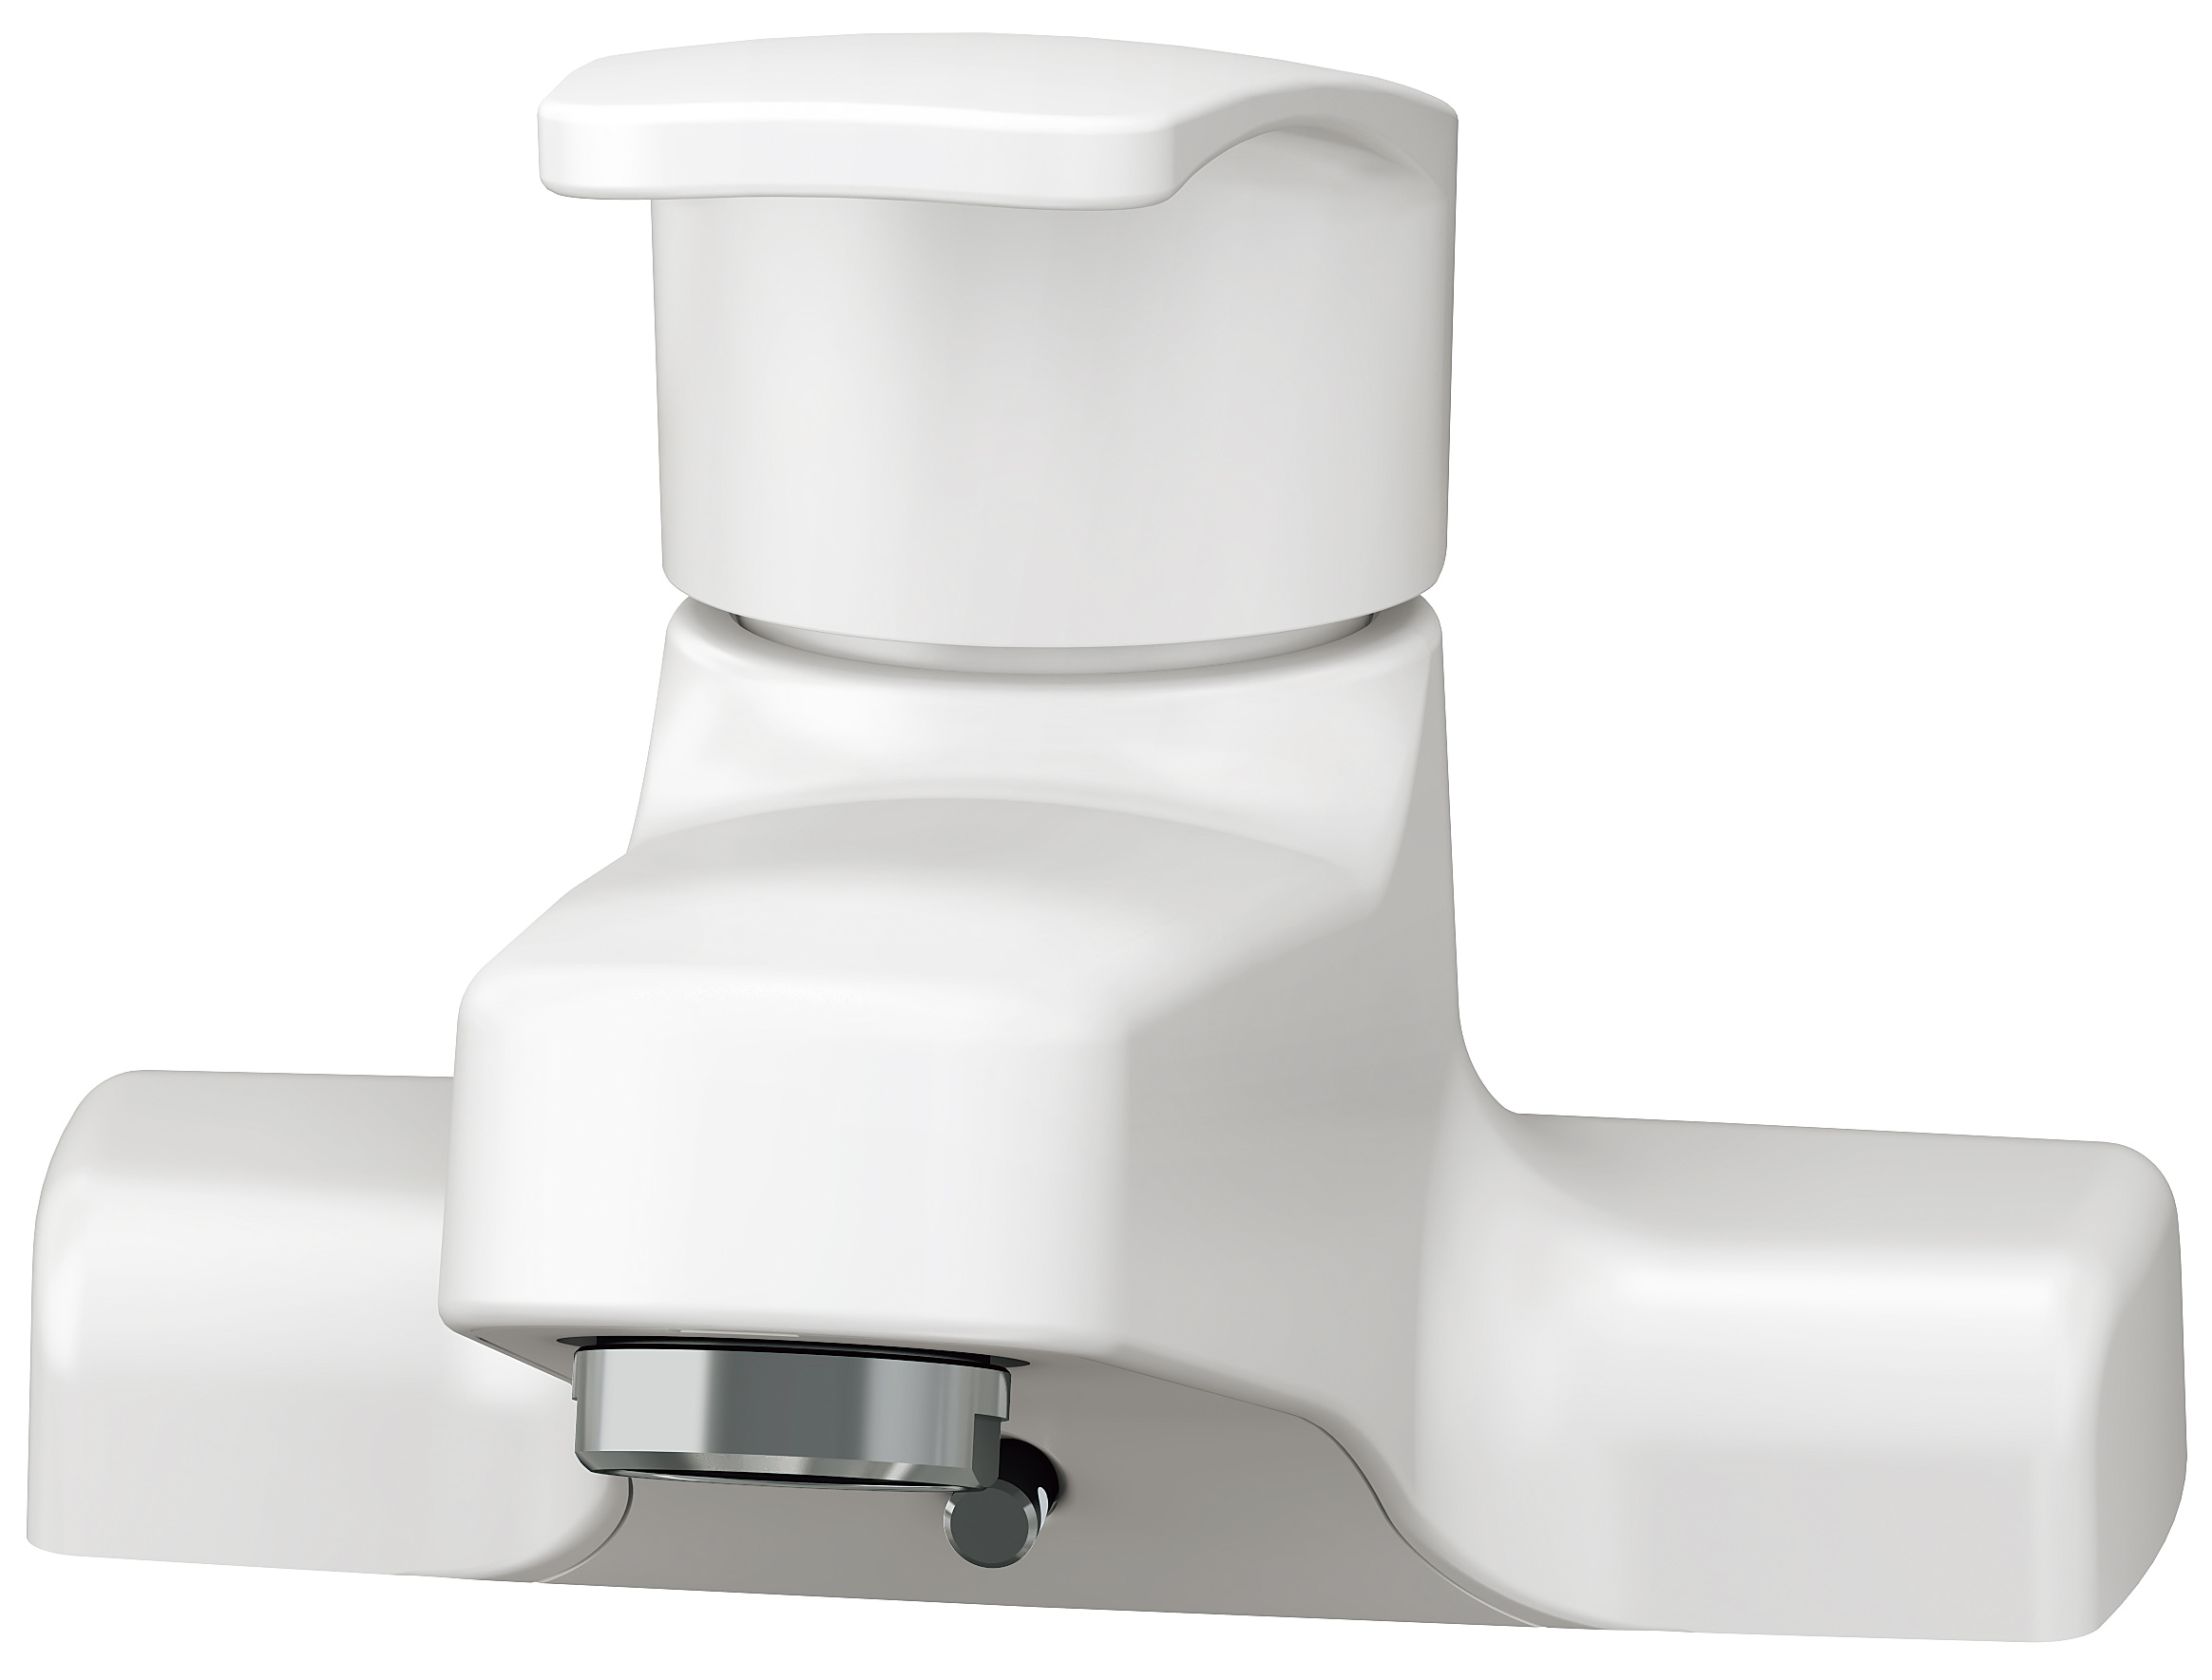 洗面化粧台ALBAシリーズ 間口60㎝ シングル混合栓1面鏡 2枚扉 LED球 ホワイト